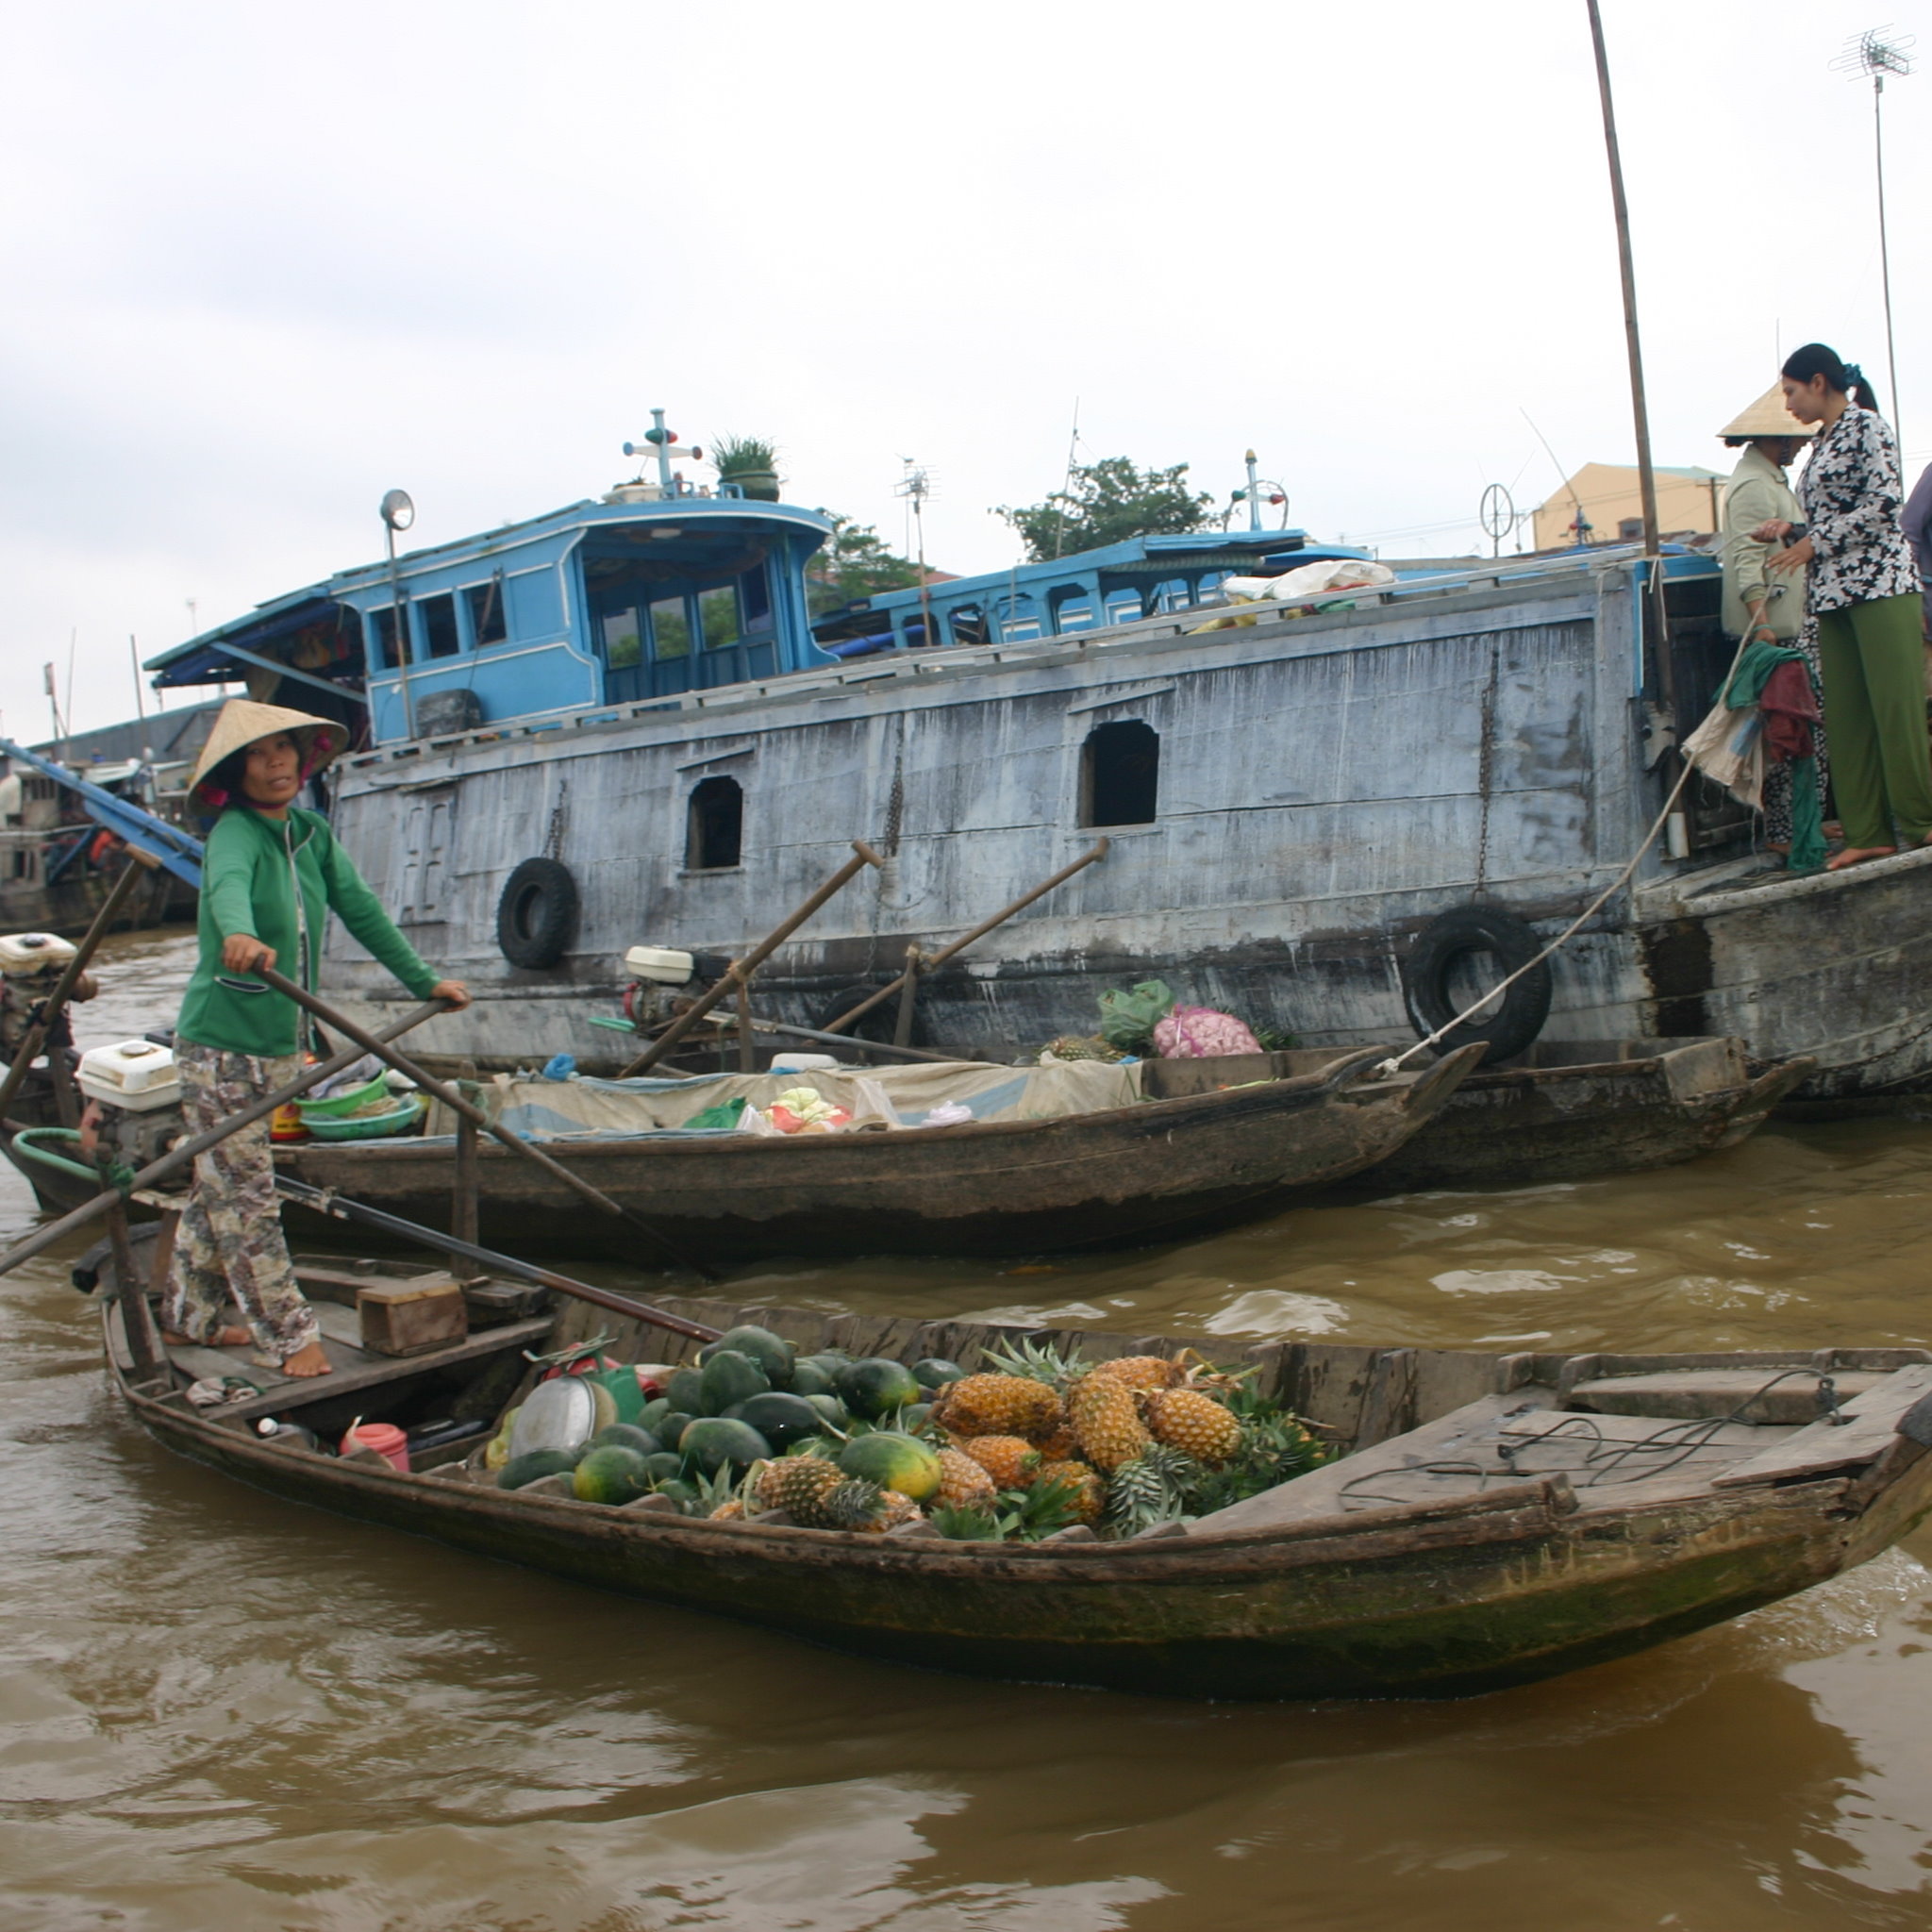 Vietnam Rundreise 11/17: Can Tho, schwimmende Märkte, Reisfabrik